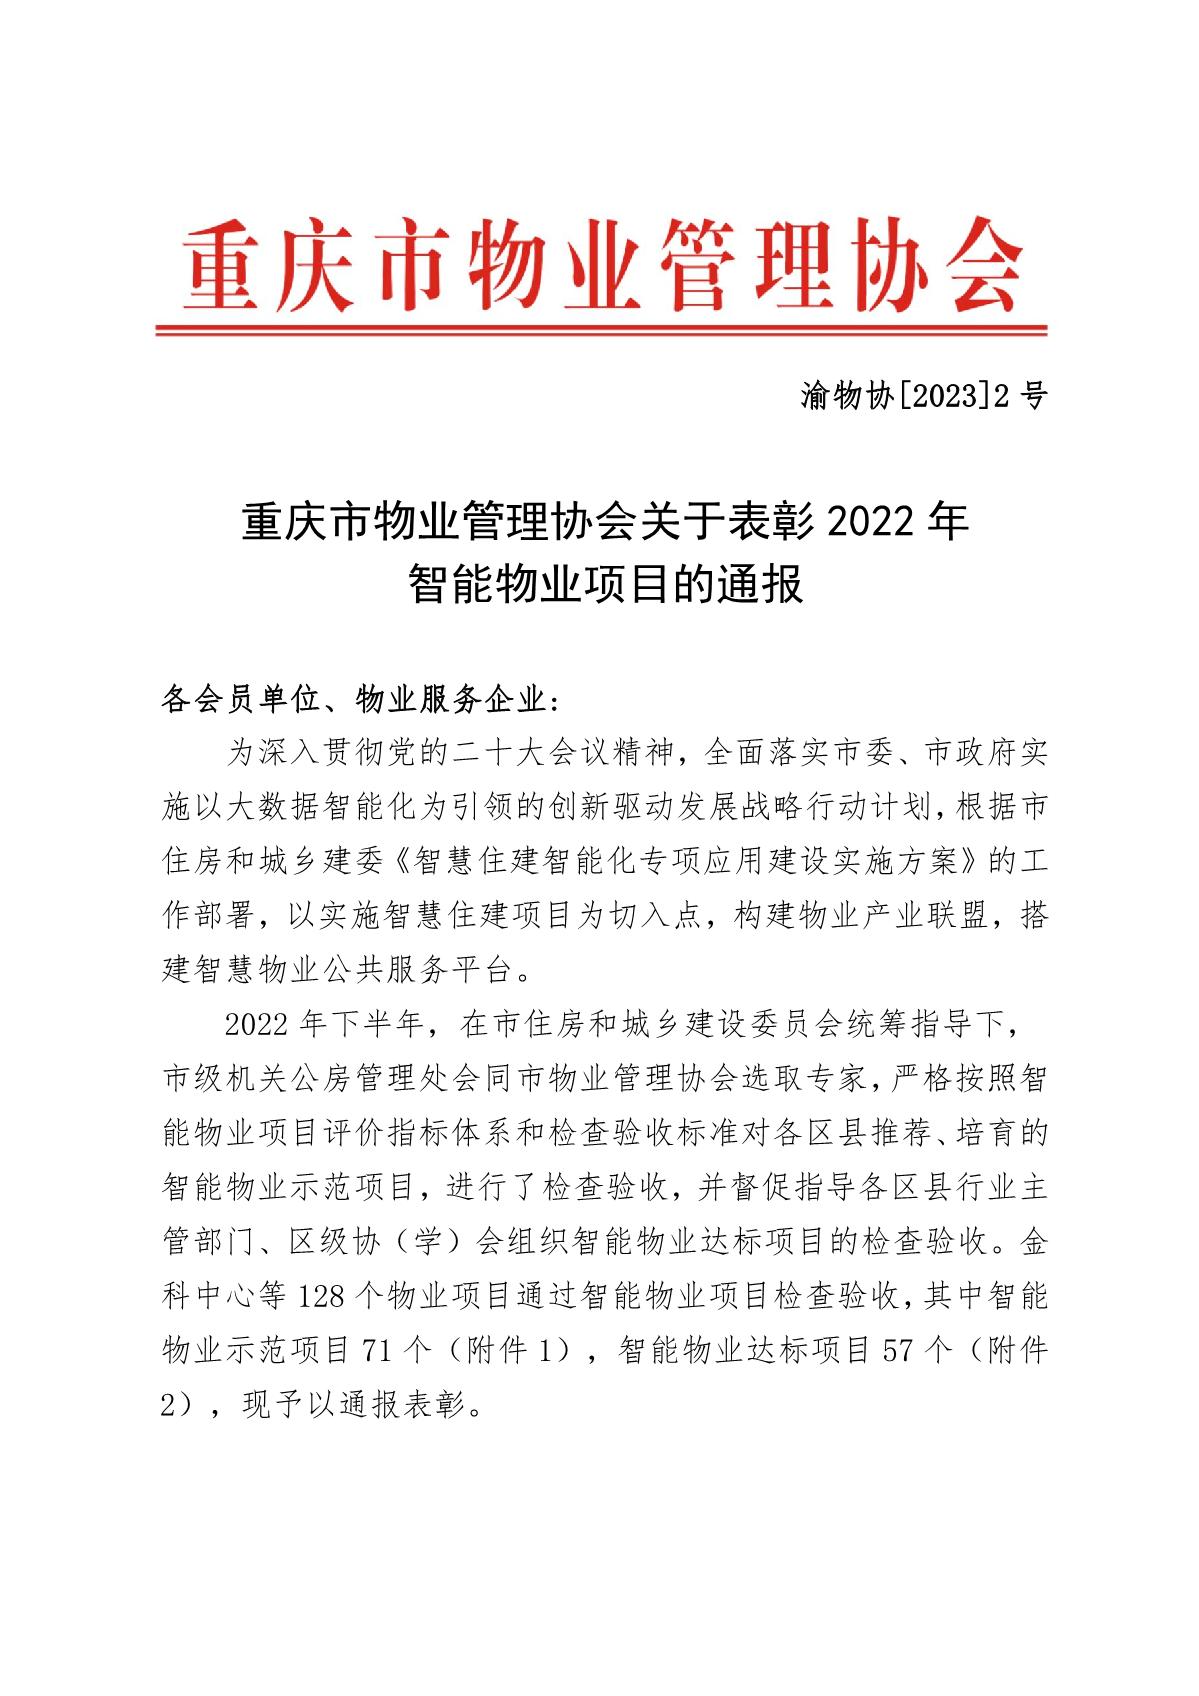 渝物协[2023]2号重庆市物业管理协会关于表彰2022年智能物业项目的通报_1.JPG